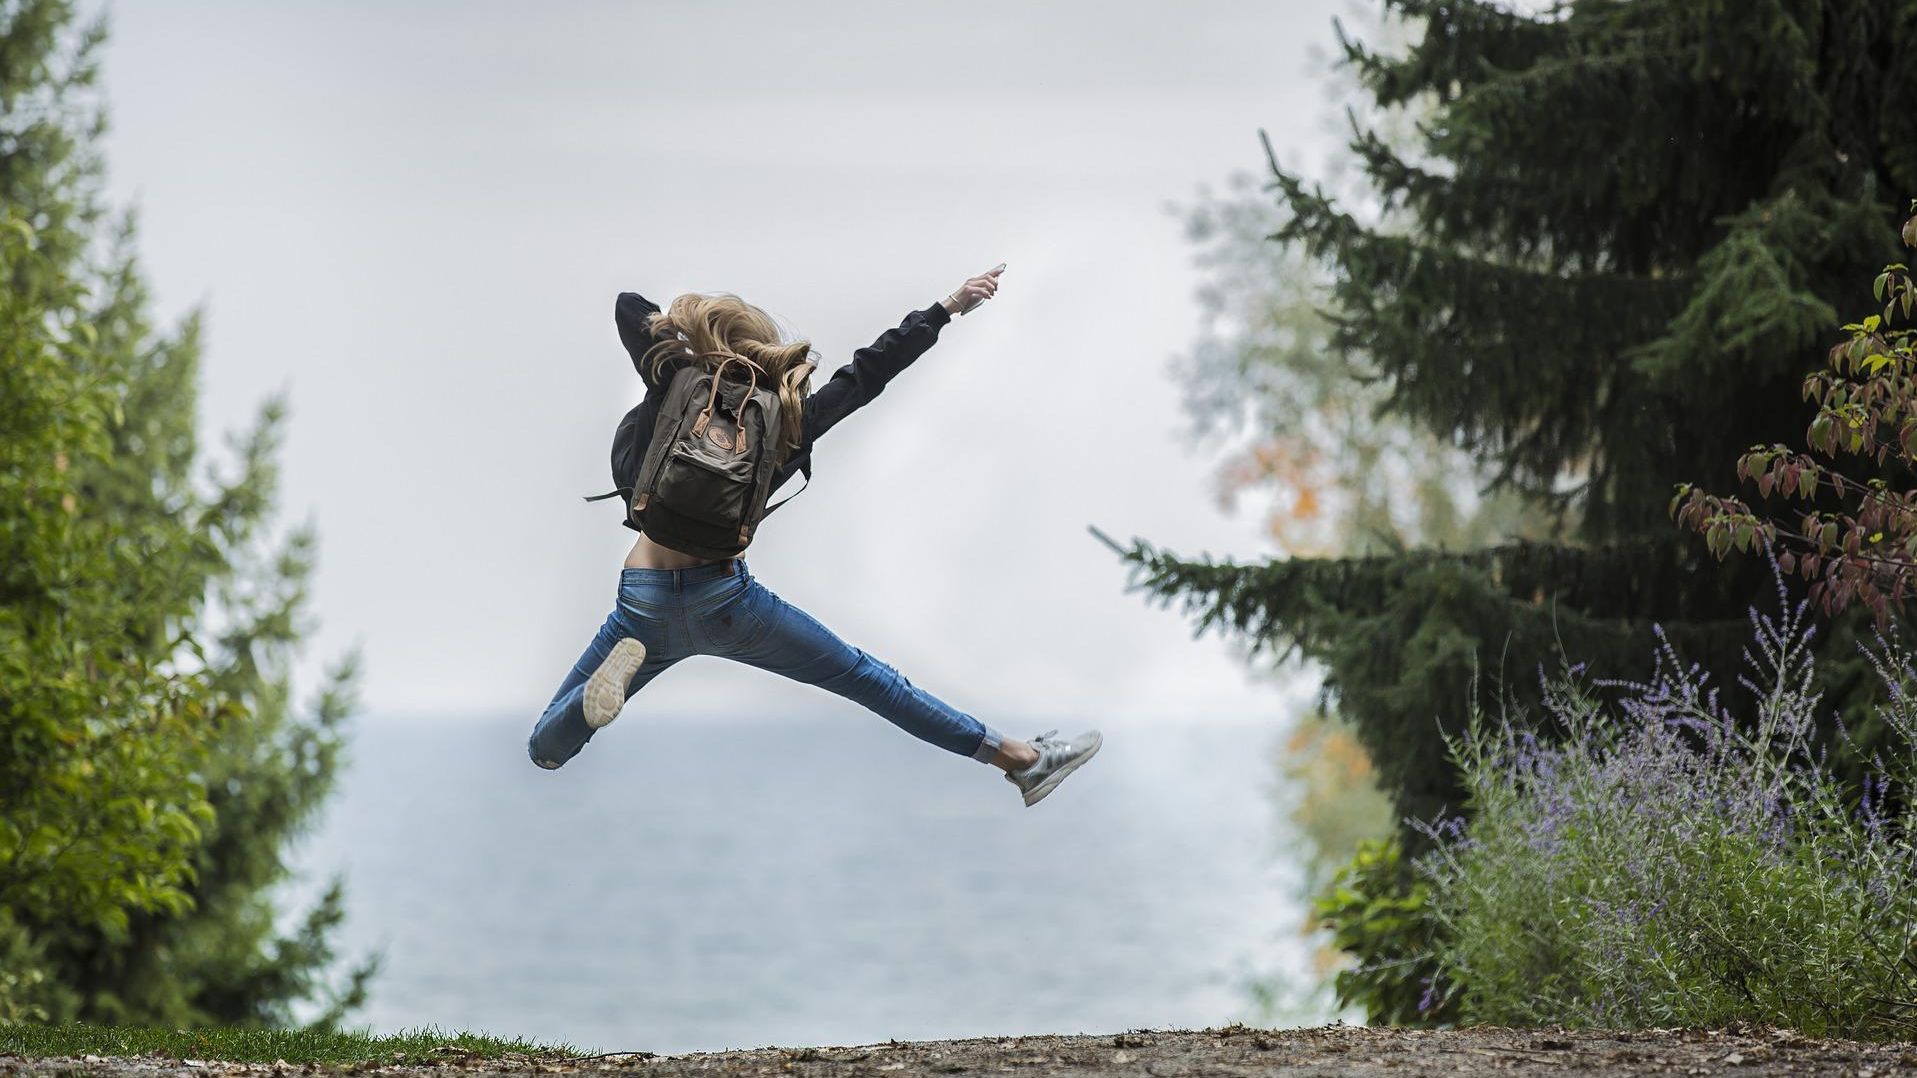 In die Luft springende Frau | Bildquelle: Pixabay